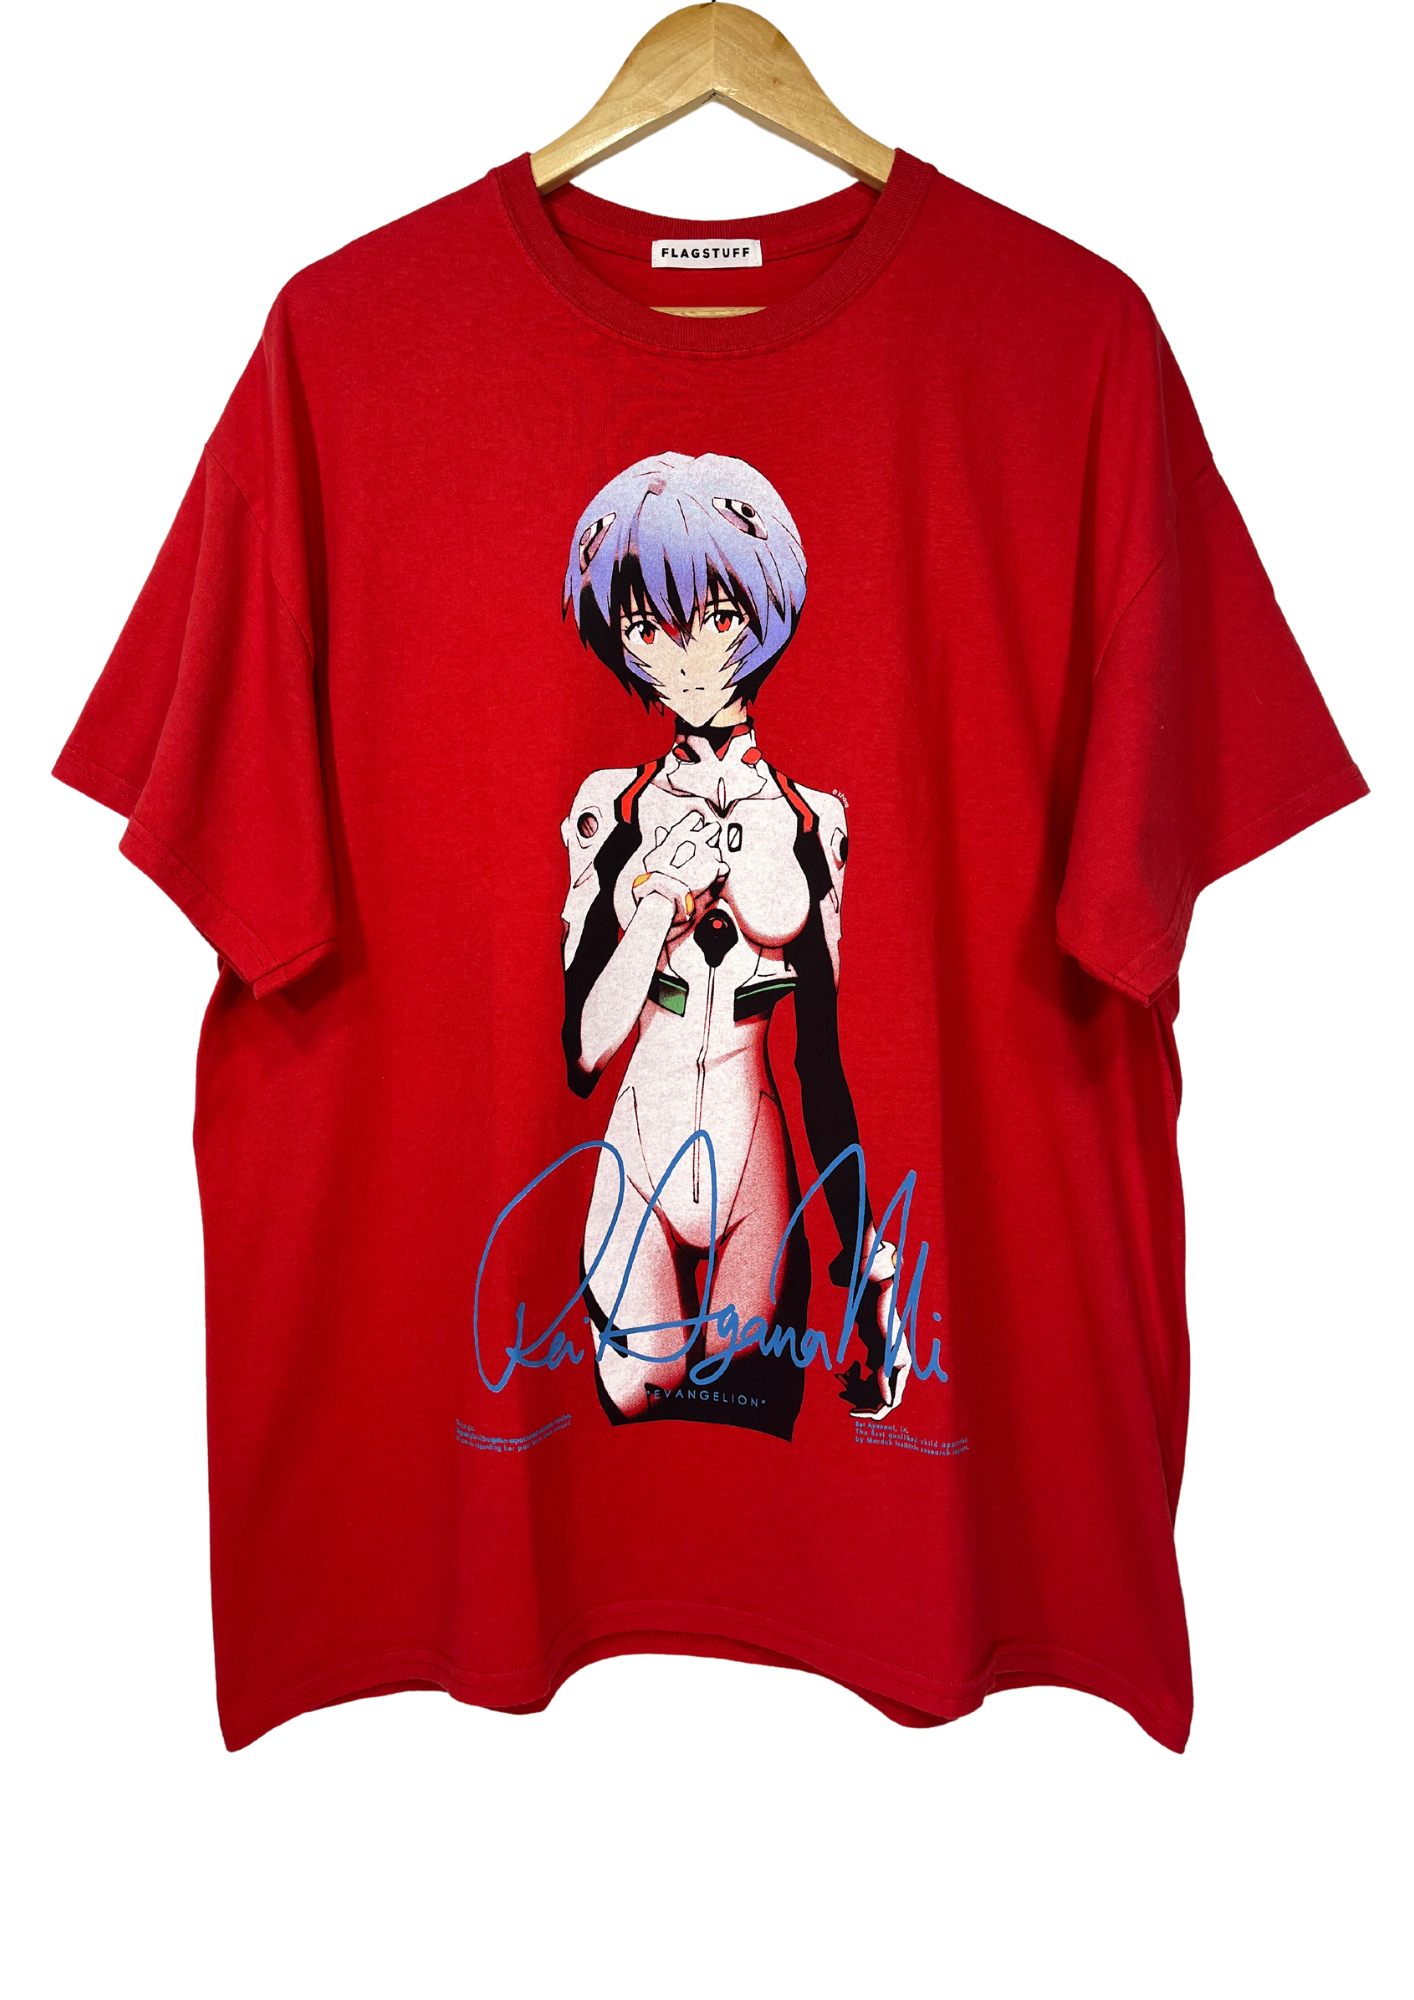 Neon Genesis Evangelion x Flagstaff Rei Ayanami T-shirt